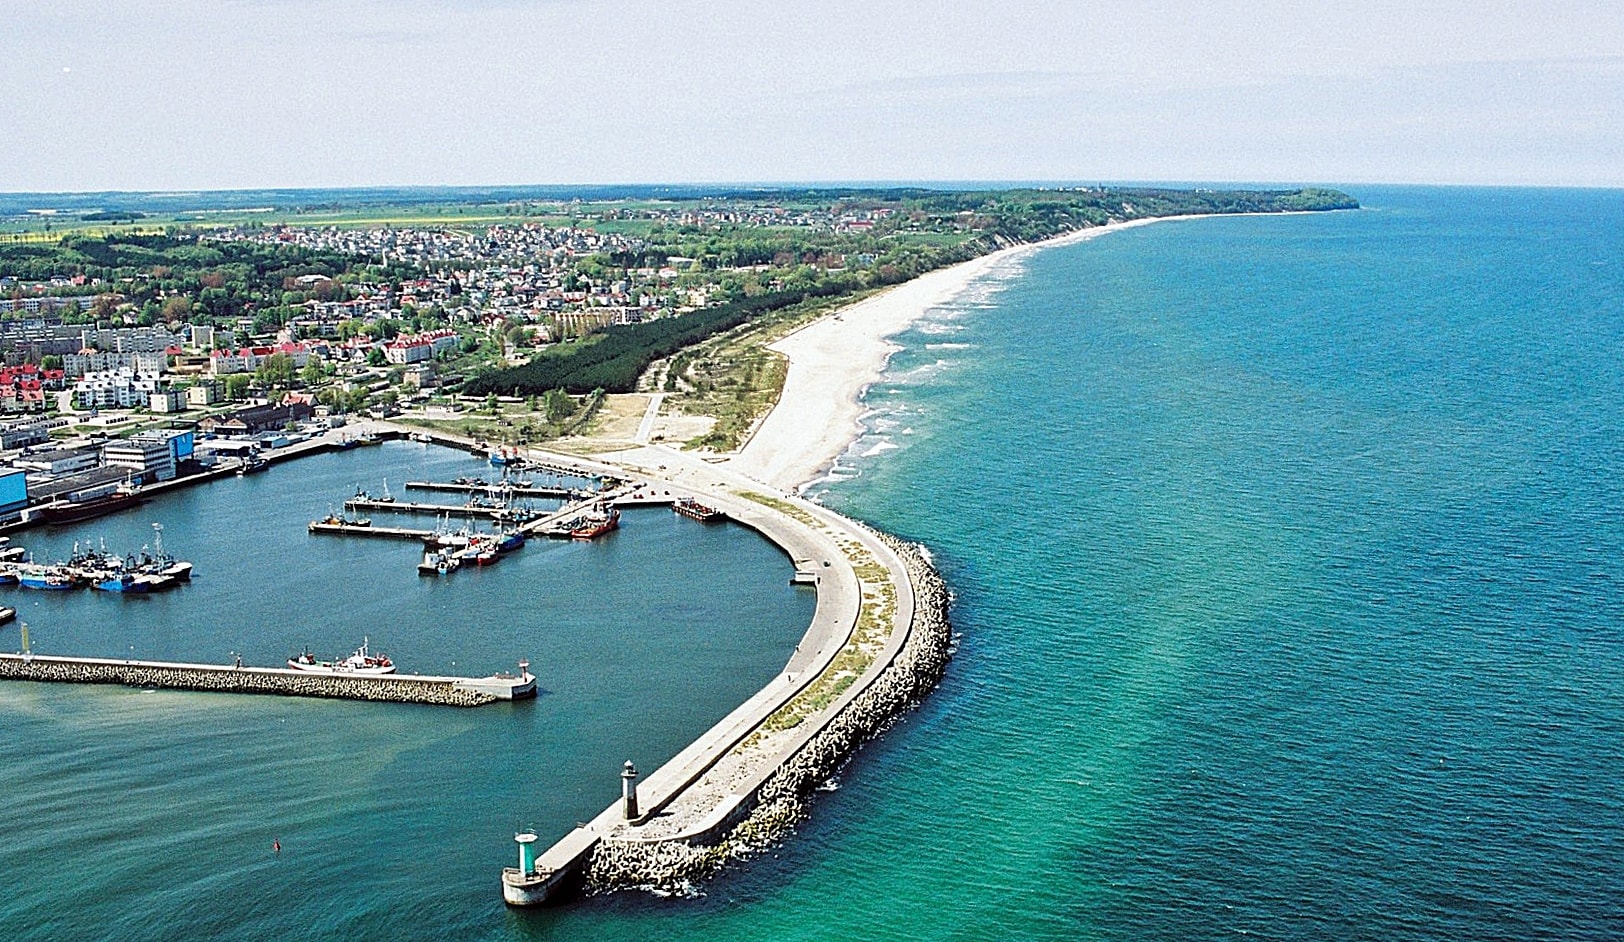 Zdjęcie z lotu ptaka, ukazujące falochron osłonowy portu we Władysławowie na tle panoramy wybrzeża w kierunku północno-zachodnim.